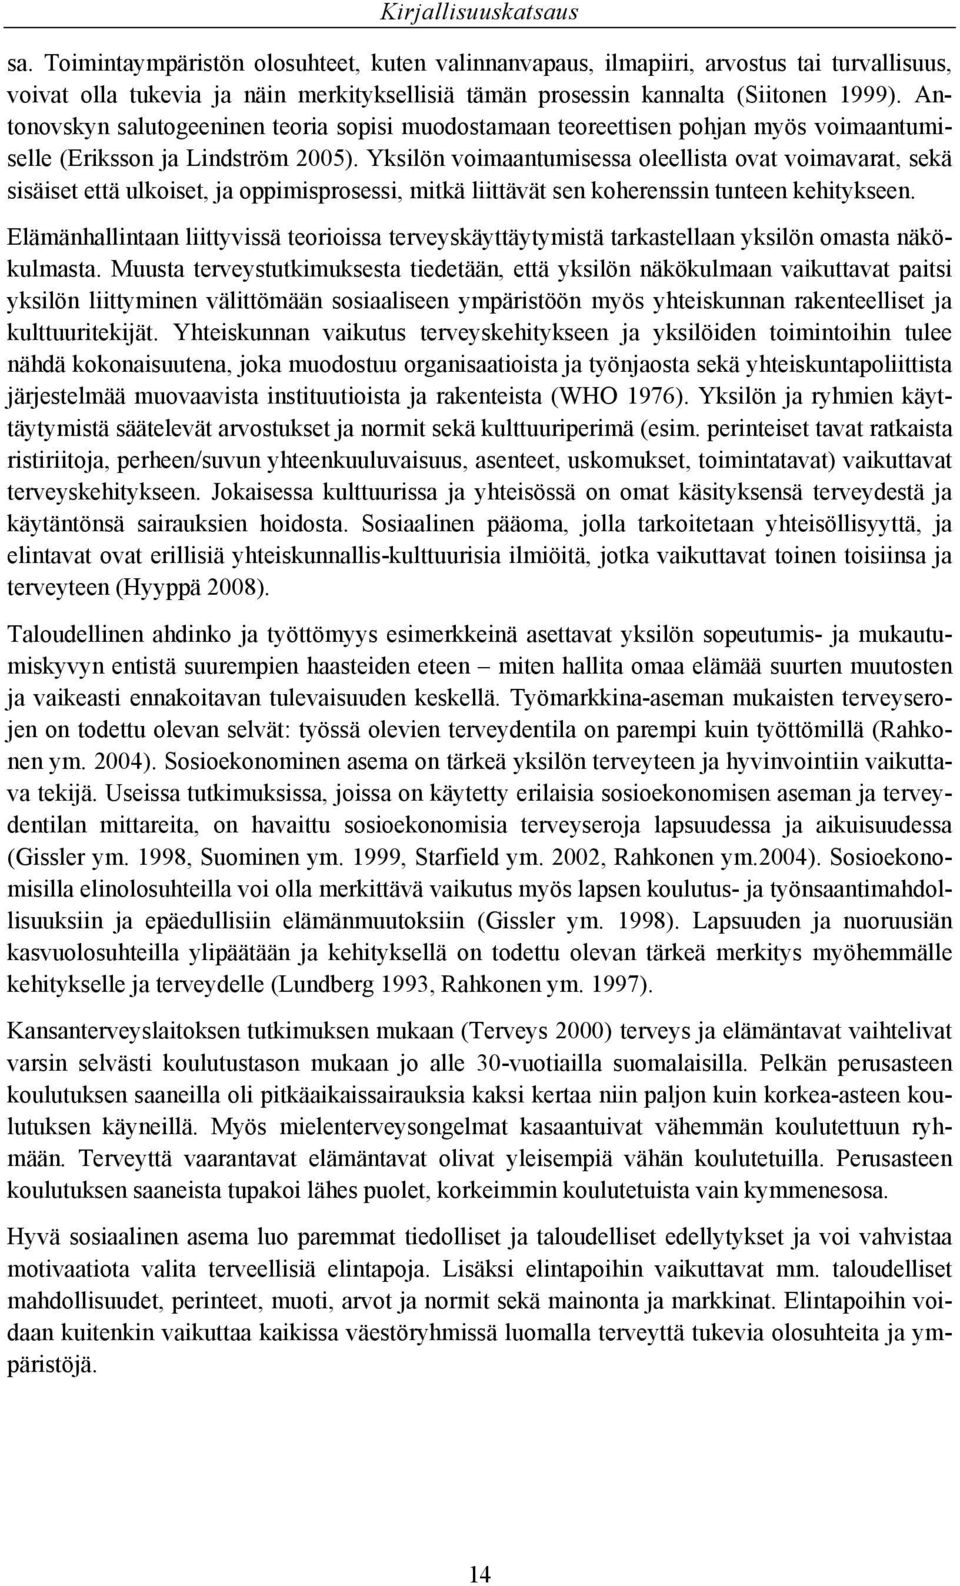 Antonovskyn salutogeeninen teoria sopisi muodostamaan teoreettisen pohjan myös voimaantumiselle (Eriksson ja Lindström 2005).